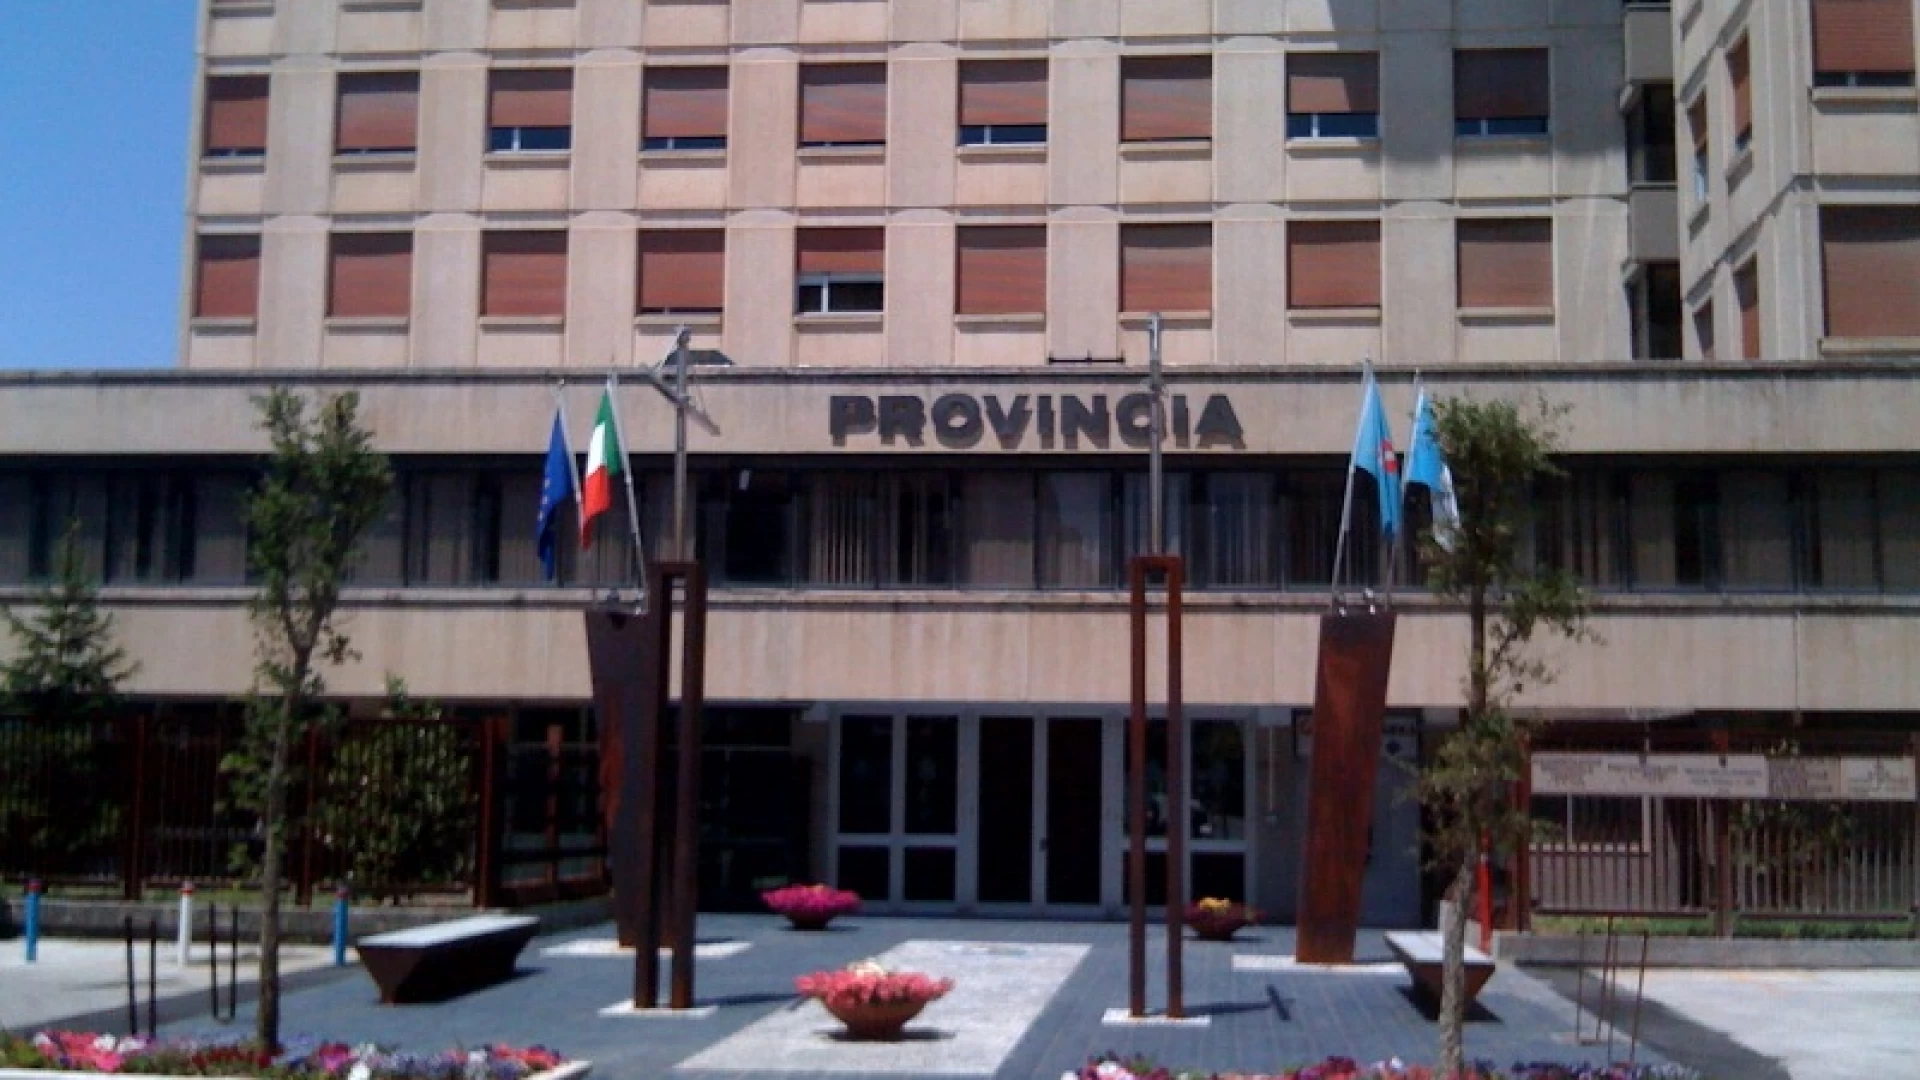 Lavori di pubblica utilità, i sindaci della Provincia di Isernia chiedono alla regione la proroga dei contratti